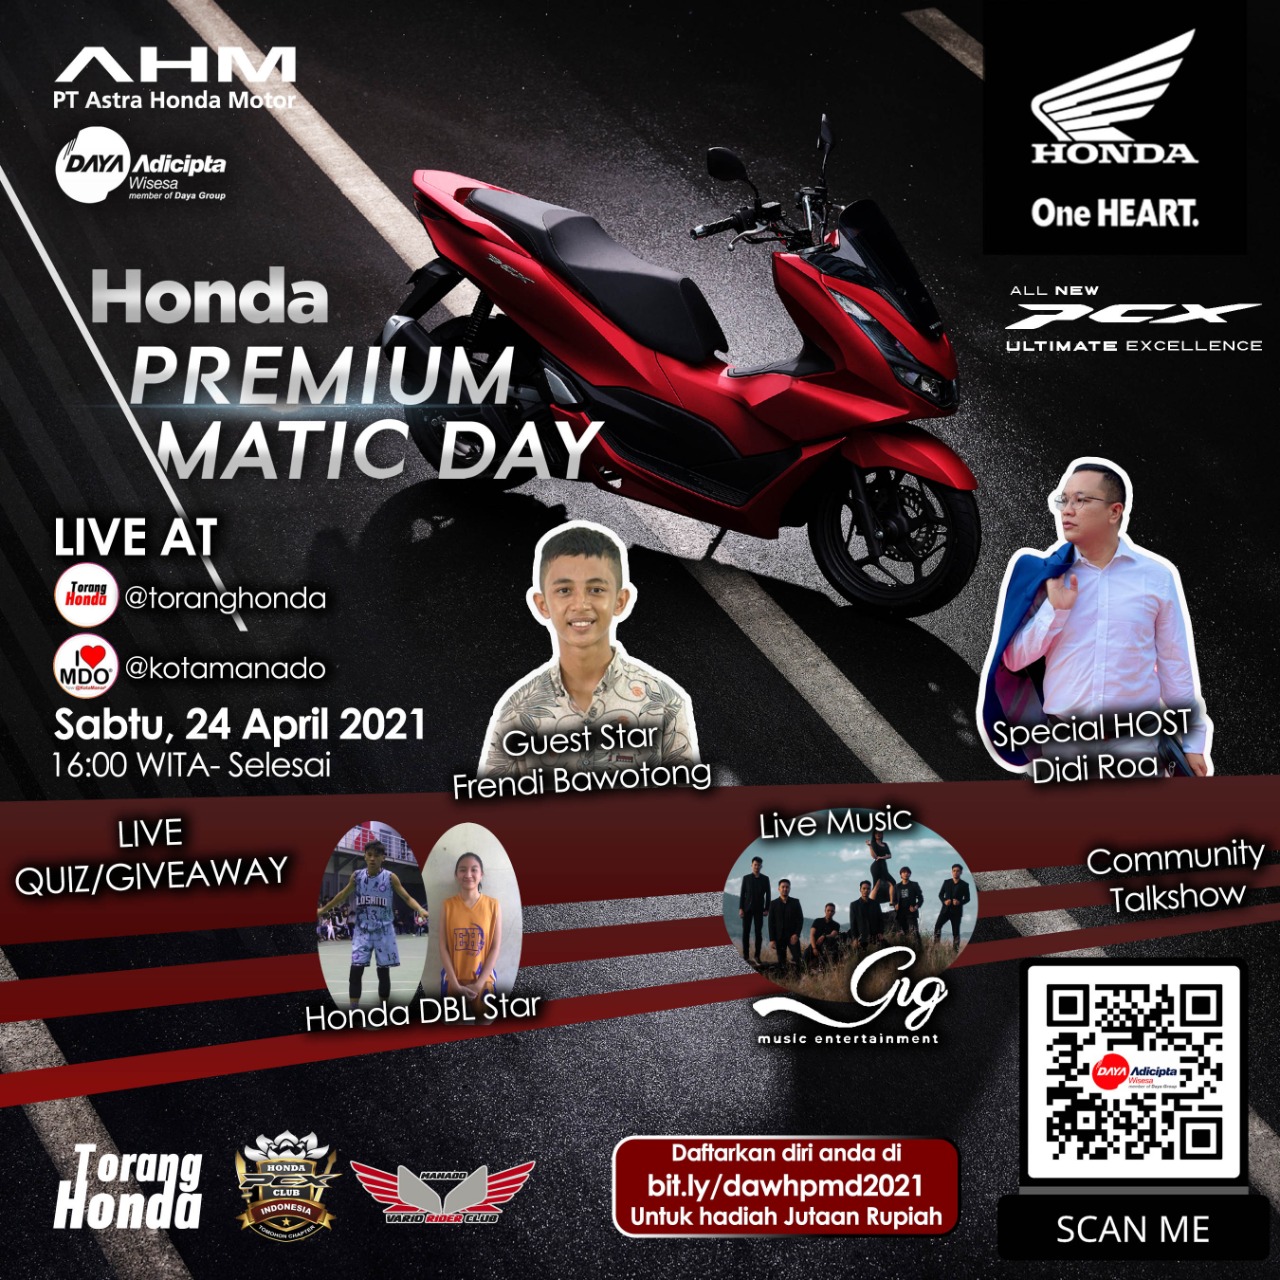 DAW Kembali Gelar Honda Premium Matic Day Secara Virtual